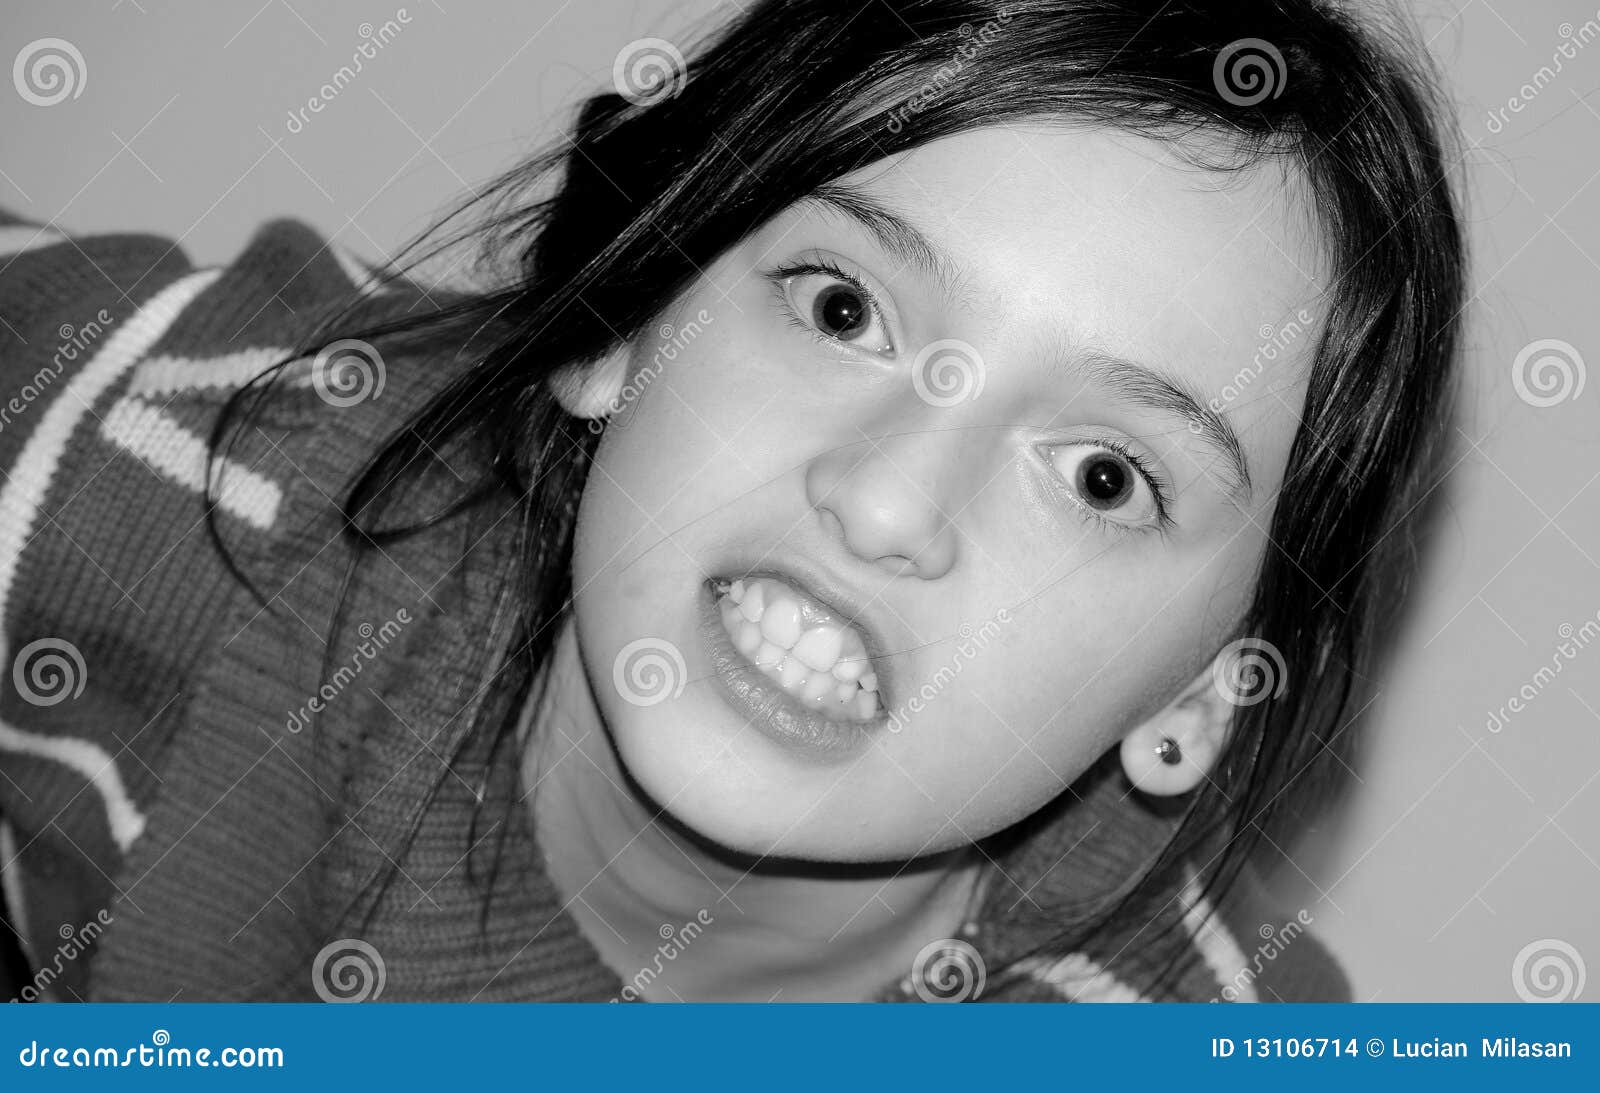 Aggressive child stock photo. Image of aggression ...